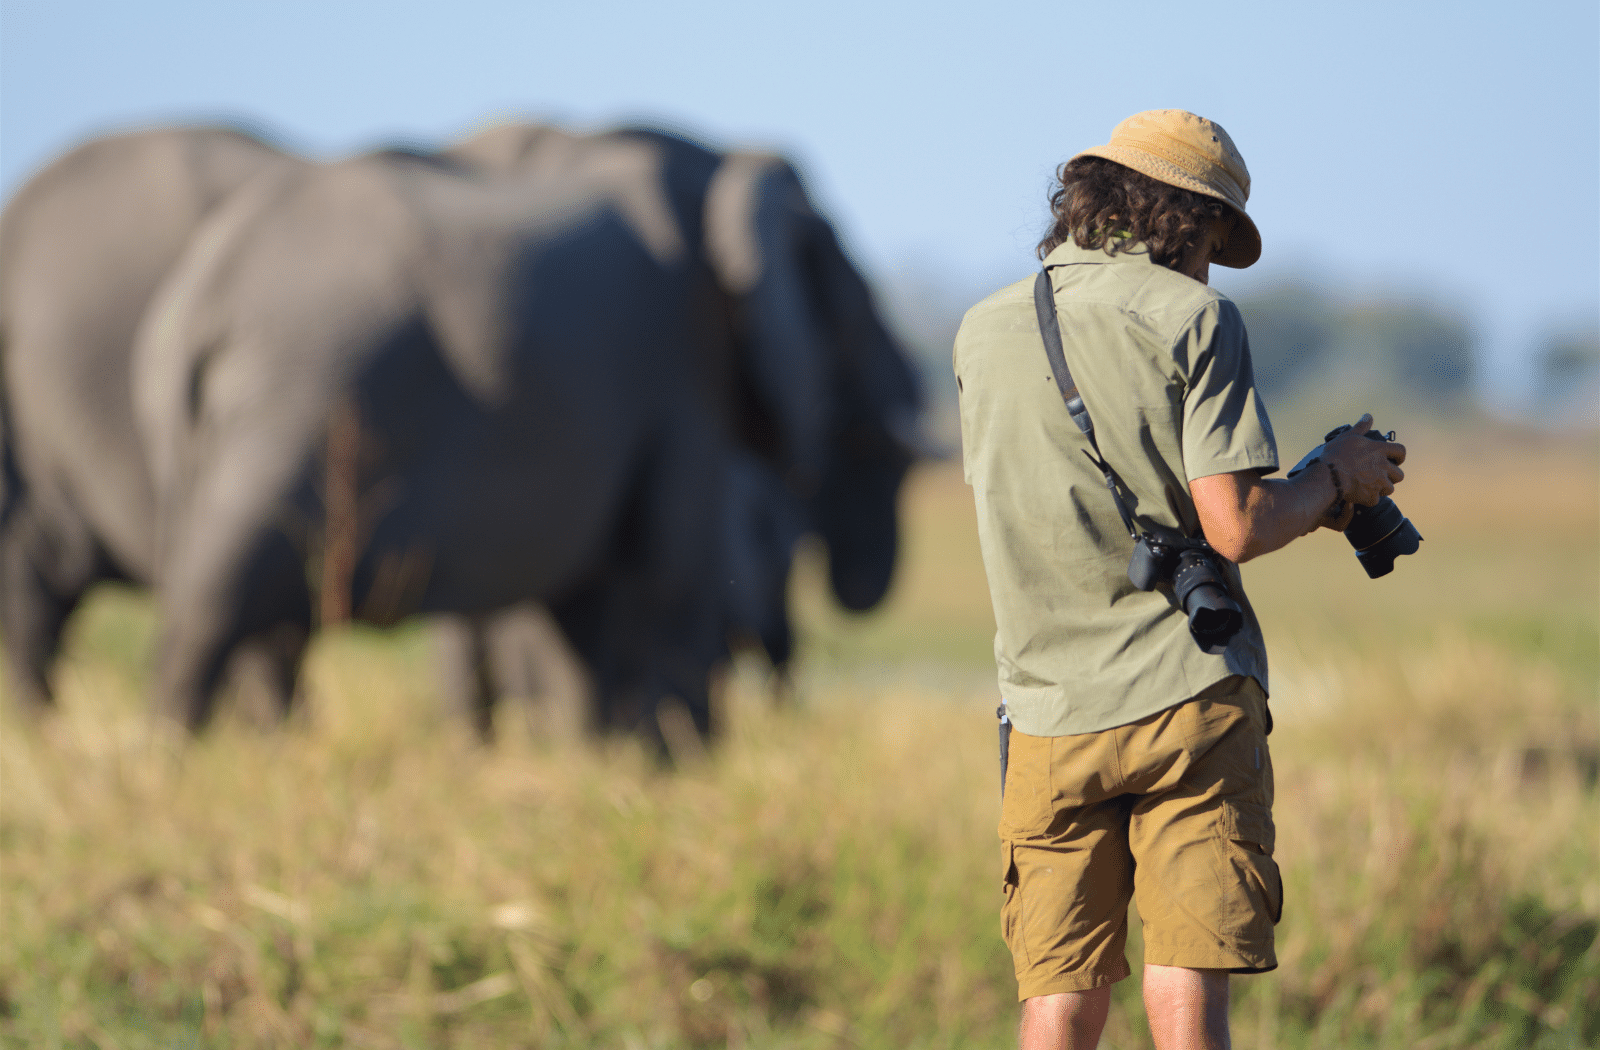 Photographing elephants in Botswana